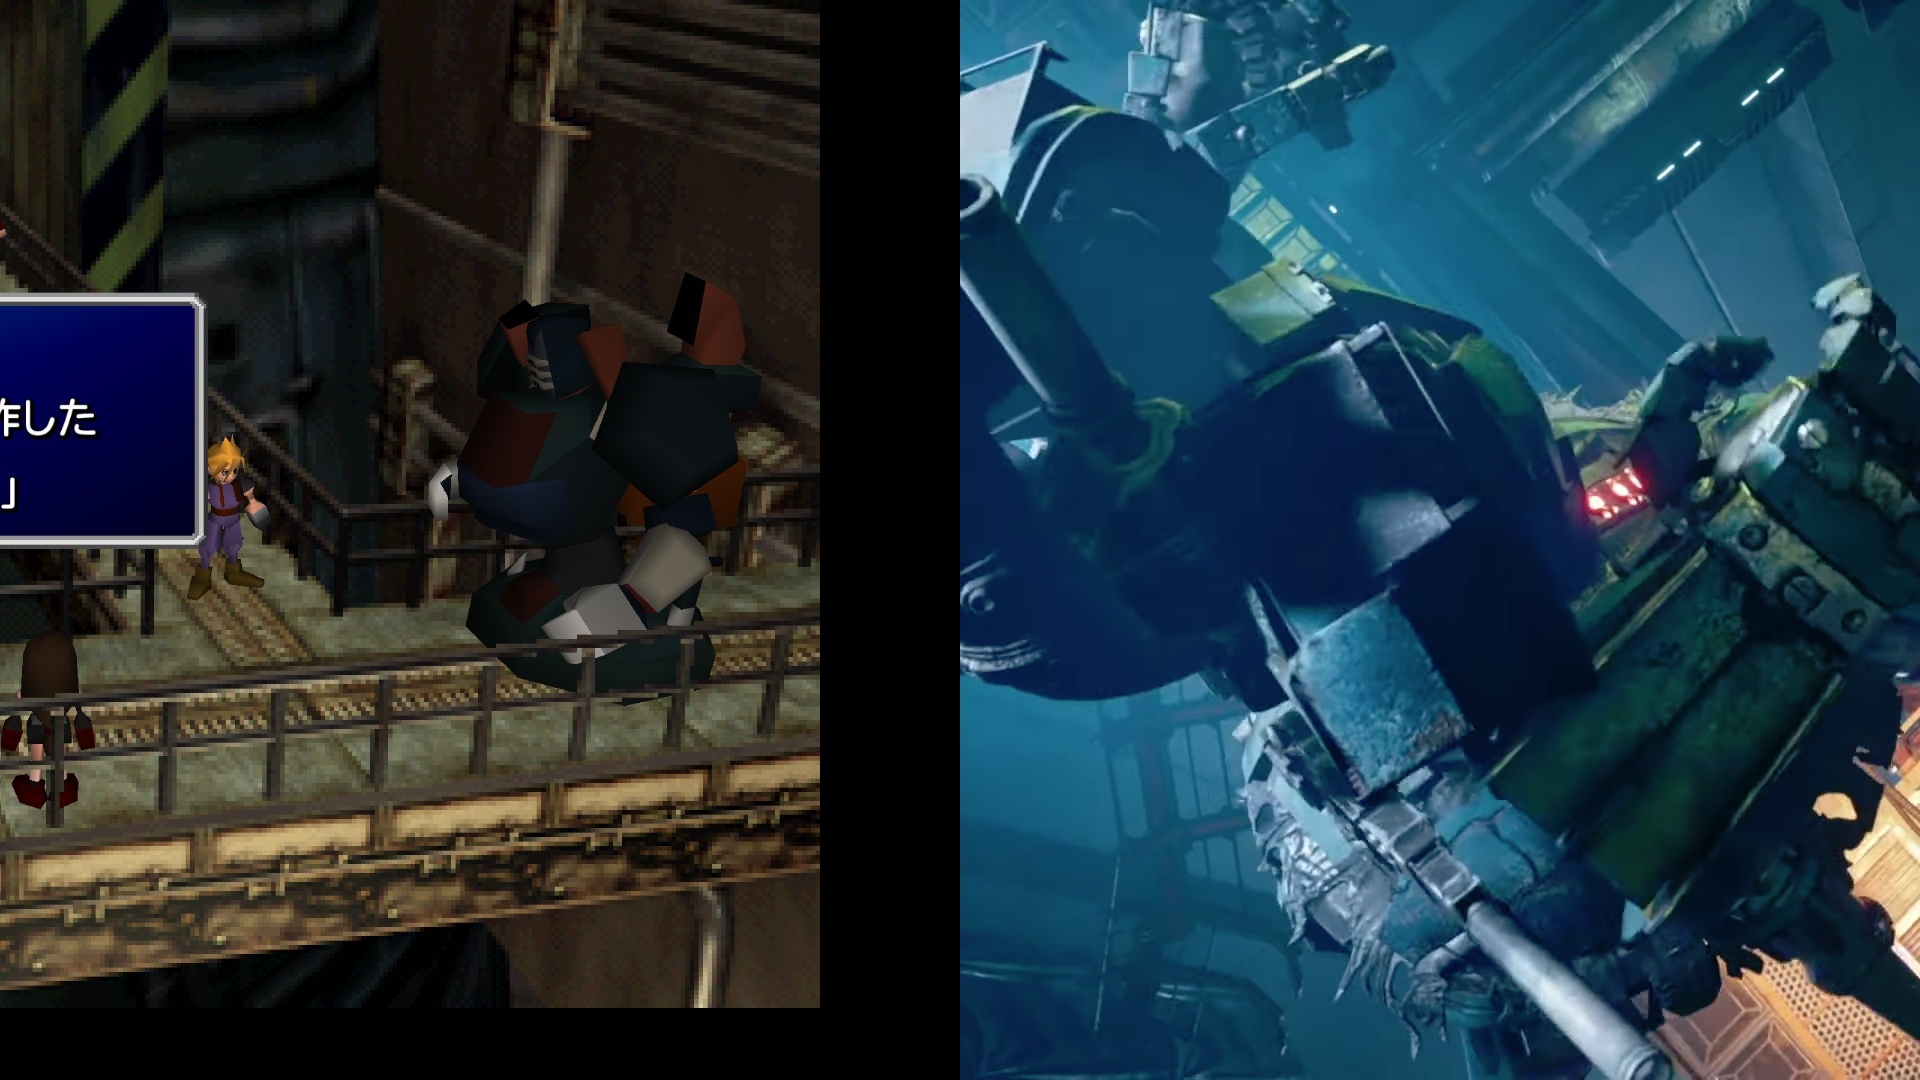 Ff7 リメイク は原作 オリジナル版 からどれくらい進化した 比較画像でわかるキャラクター 戦闘システム 街の変化